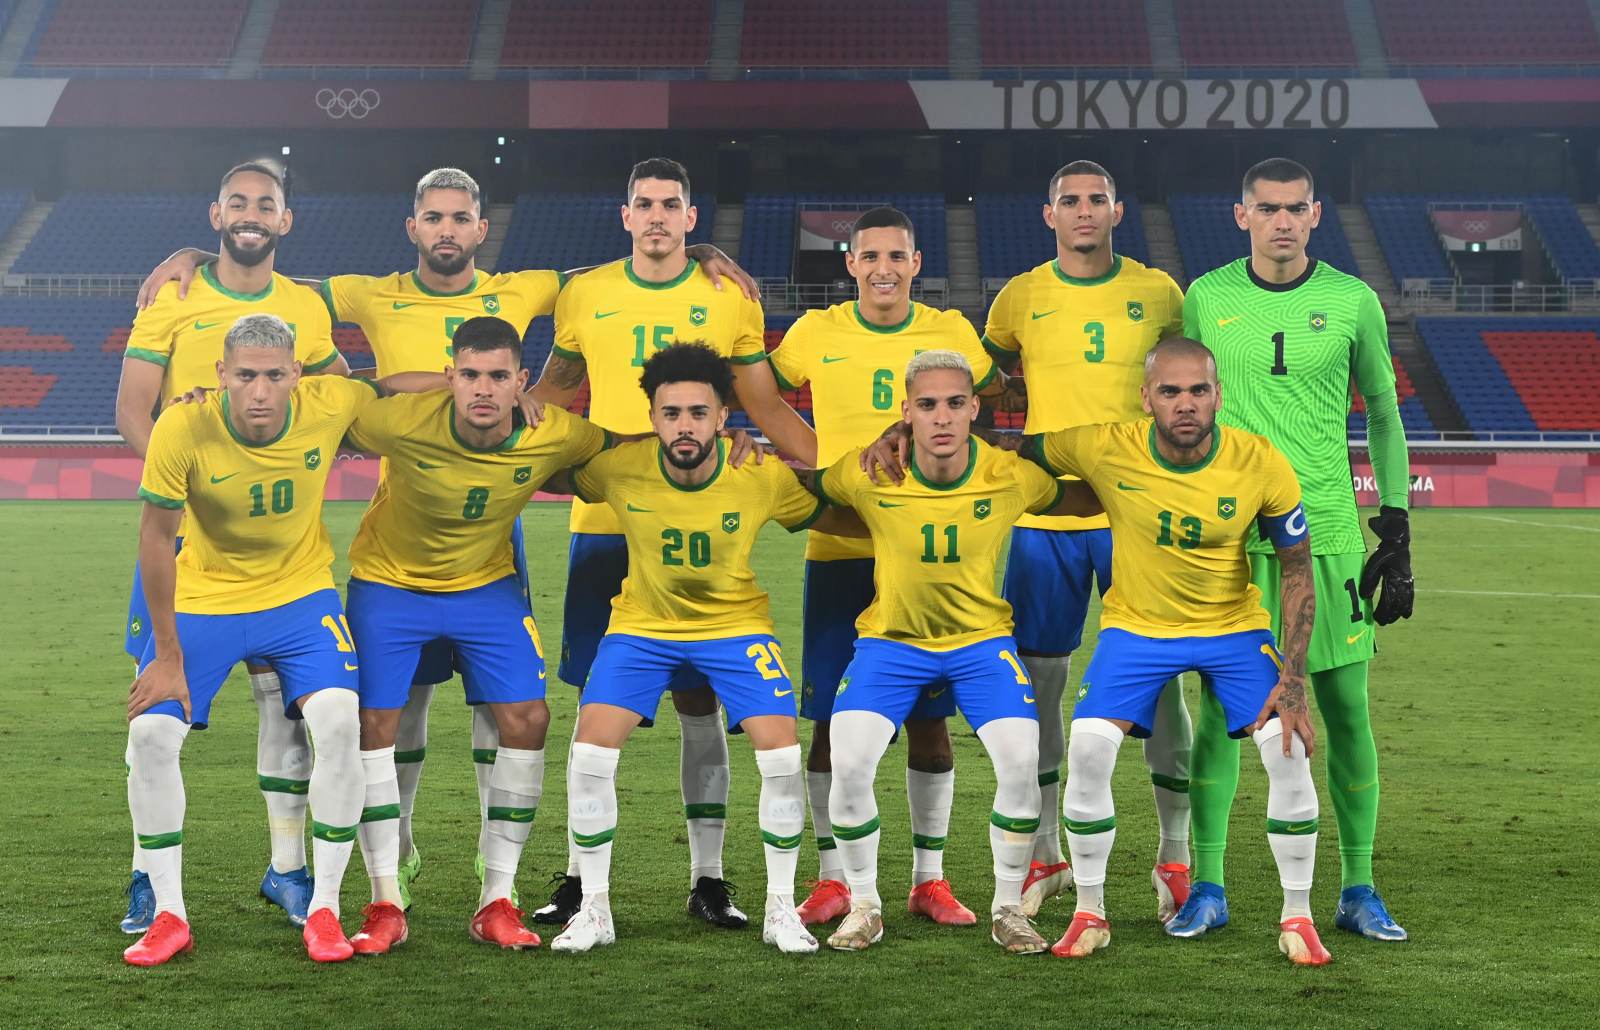 Зе Карлос: «Мне кажется, за Бразилию приятнее всего болеть на этом чемпионате мира»